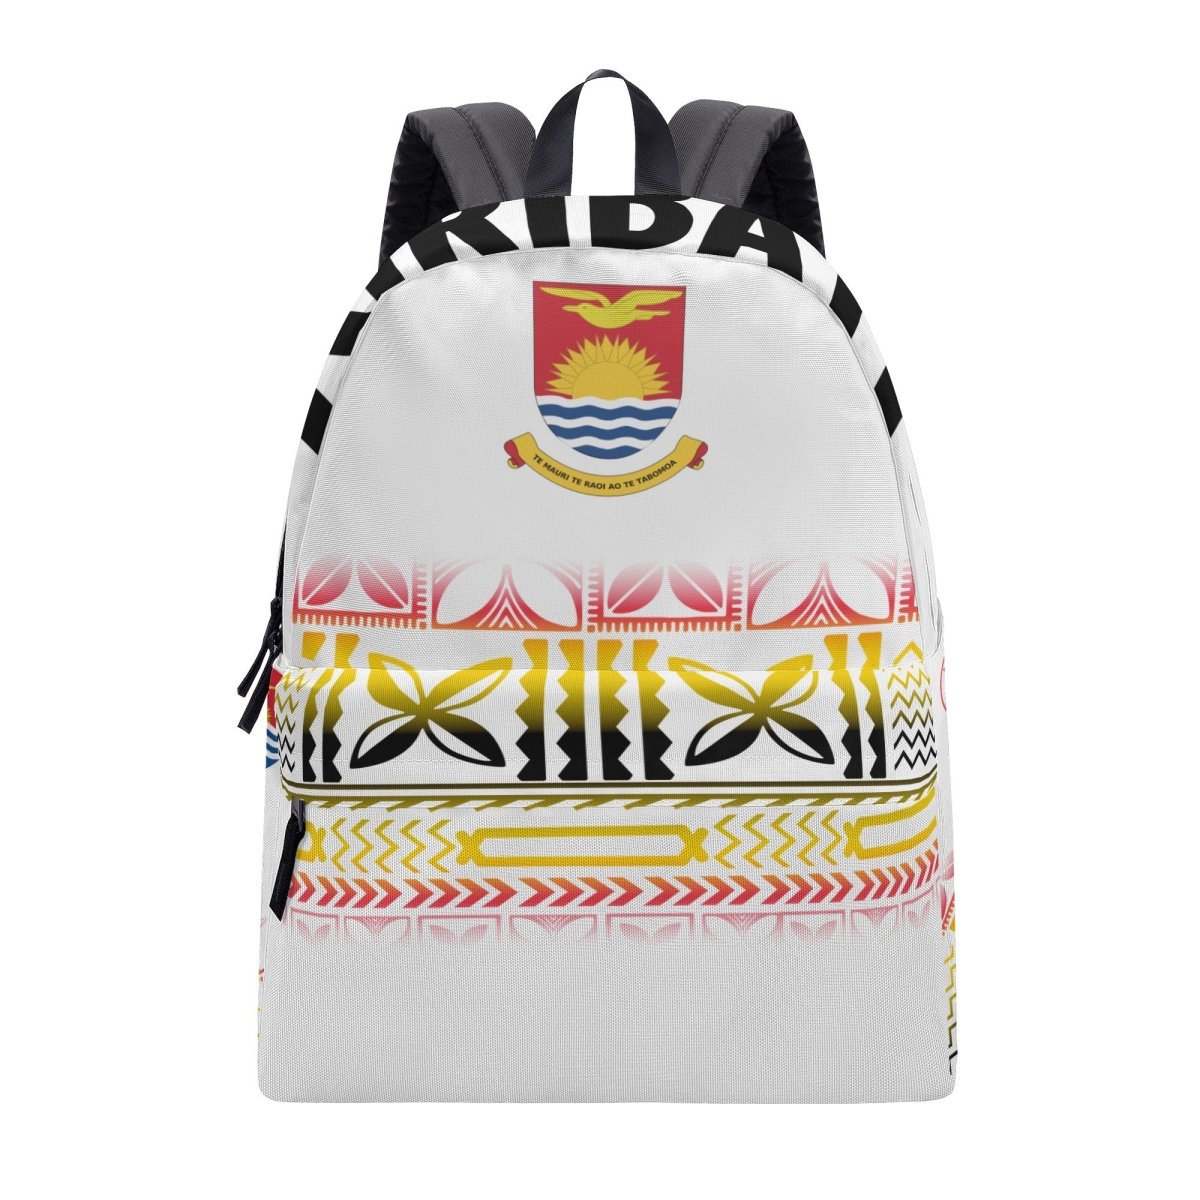 Kiribati Backpack - Nesian Kulture